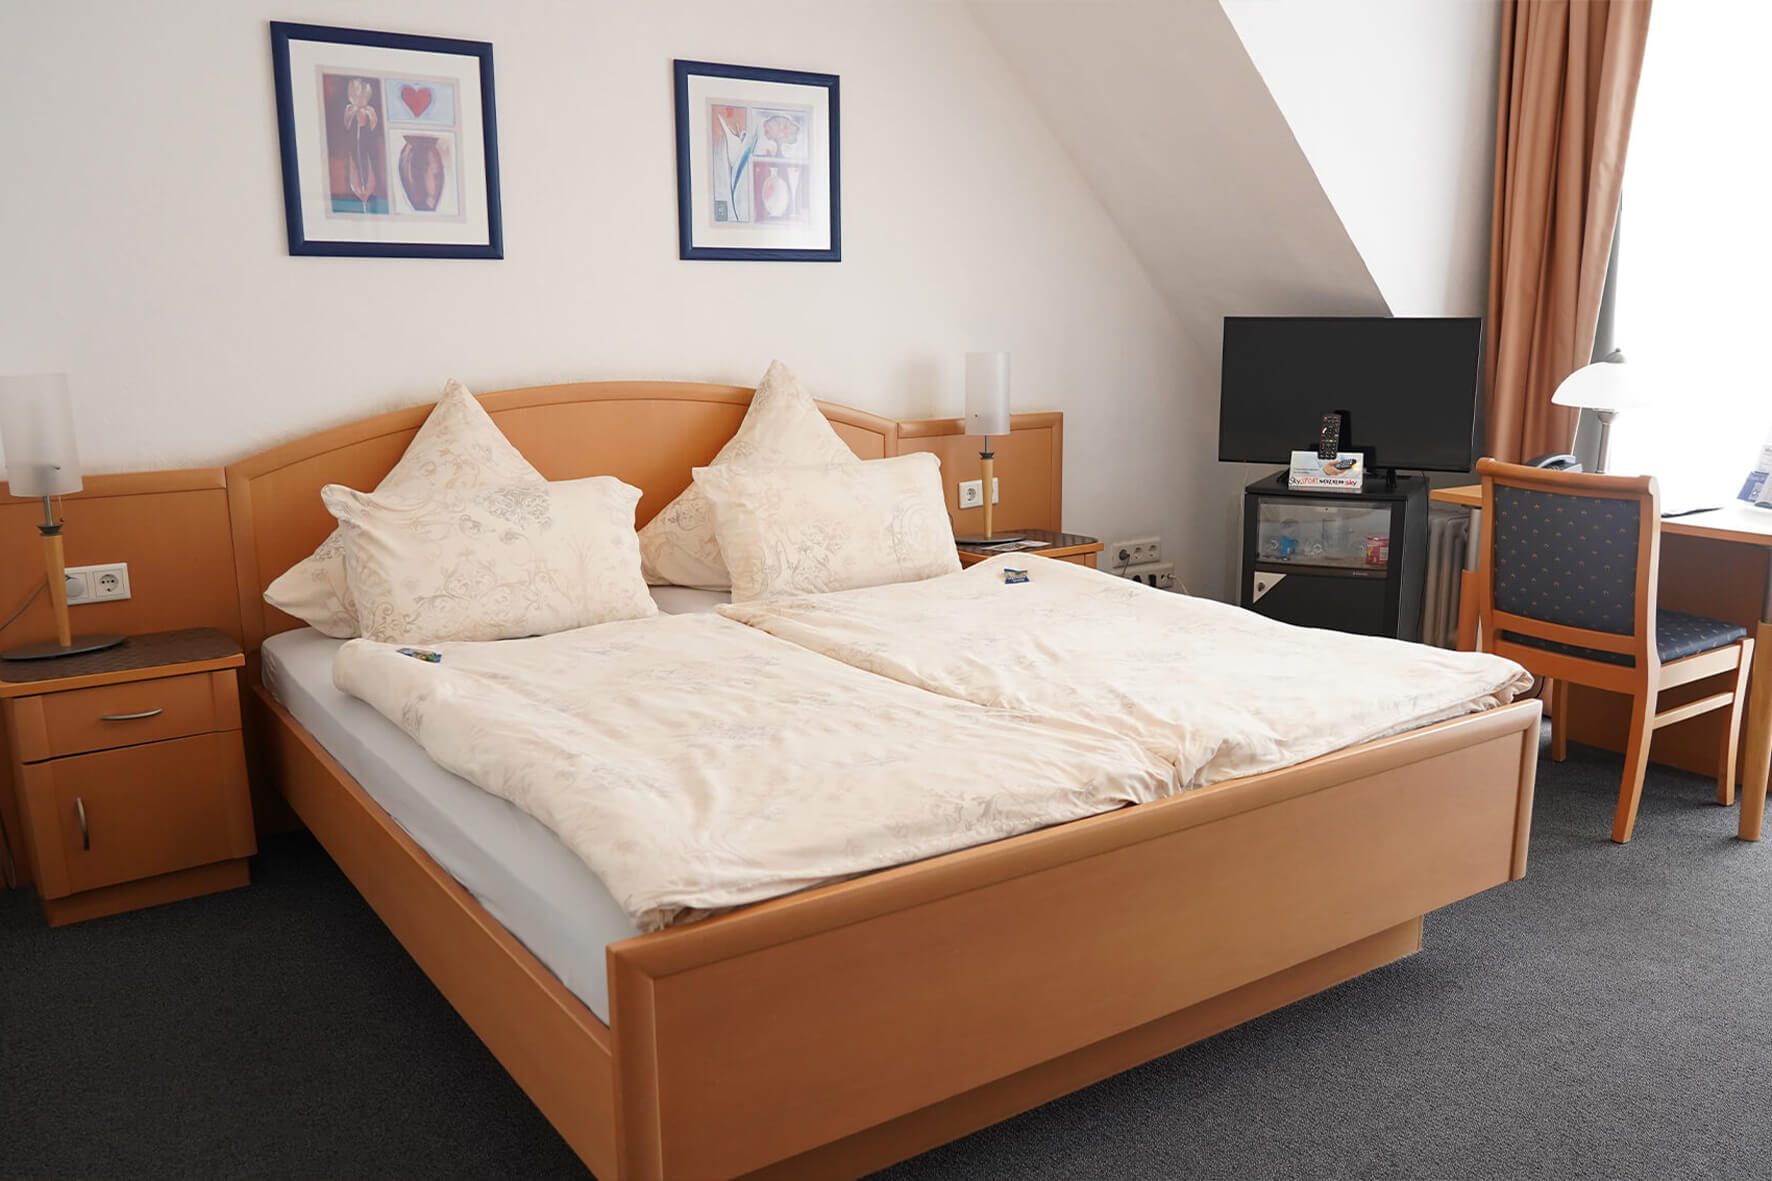 Doppelbett aus Holz in einem Zimmer mit weißen Wänden und dunklen Teppich und einem Flachbildschirmfernseher in der Ecke